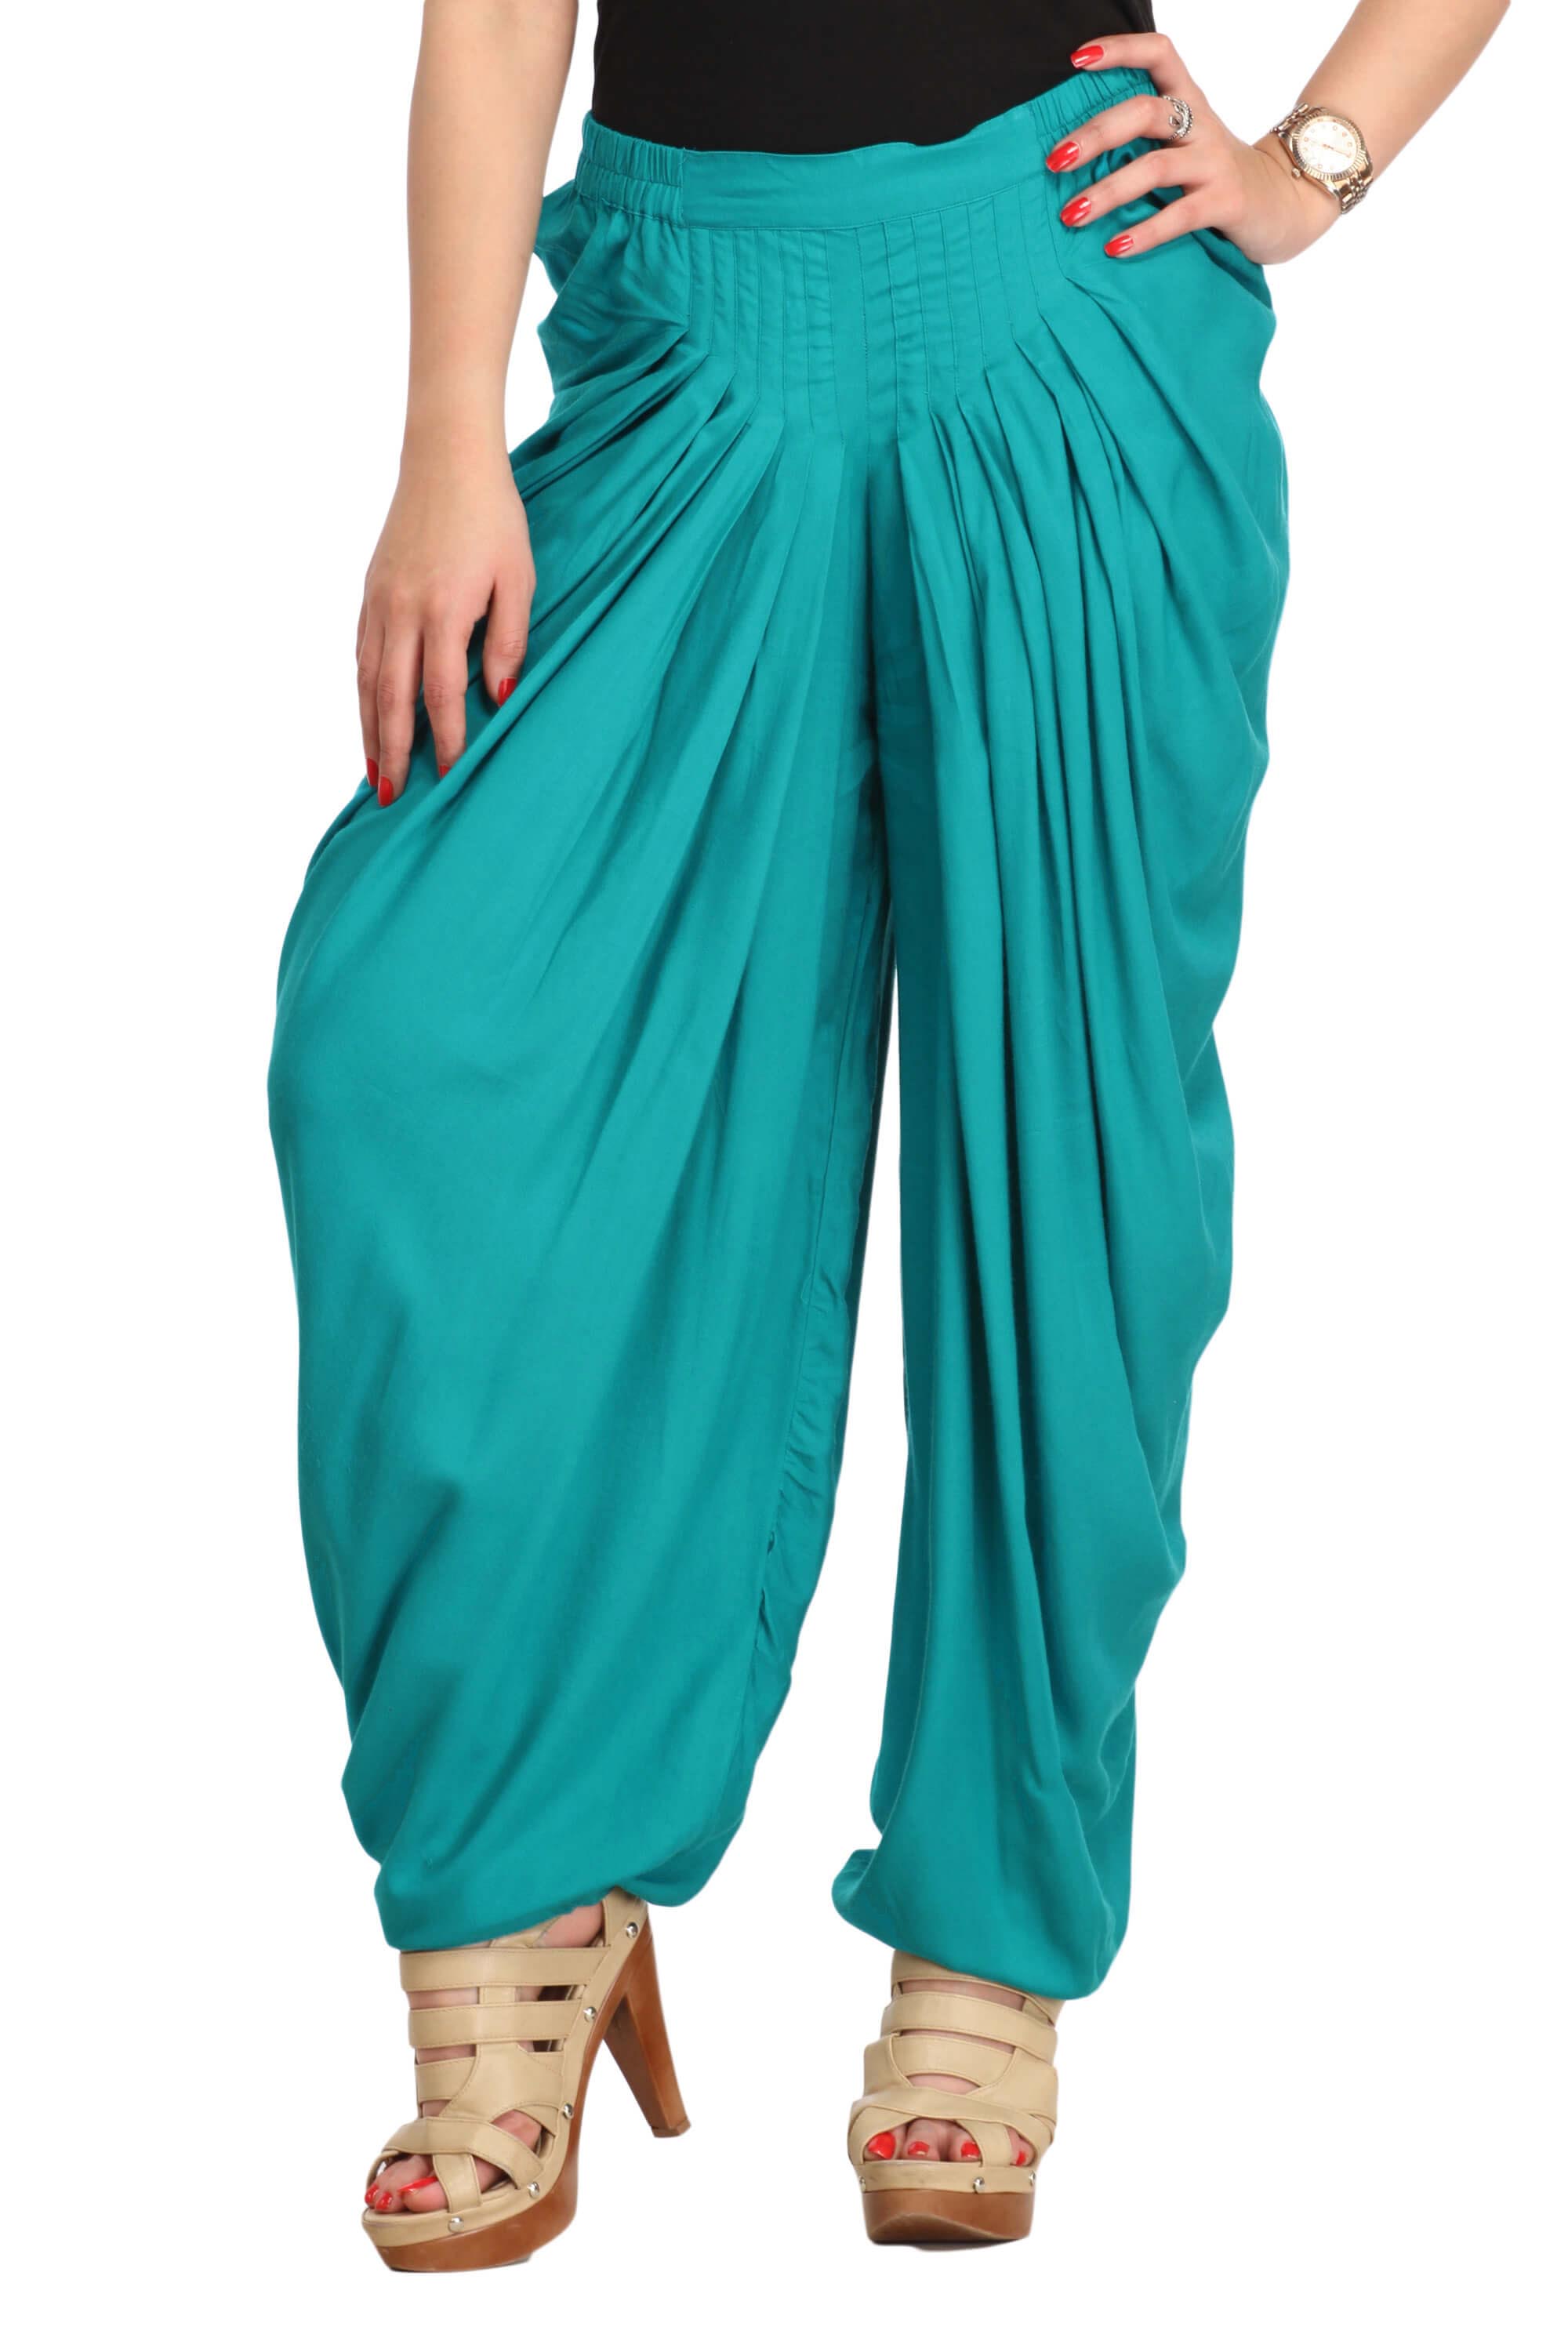 Teal Blue Solid Color Dhoti Harem Pants for Girls & Women